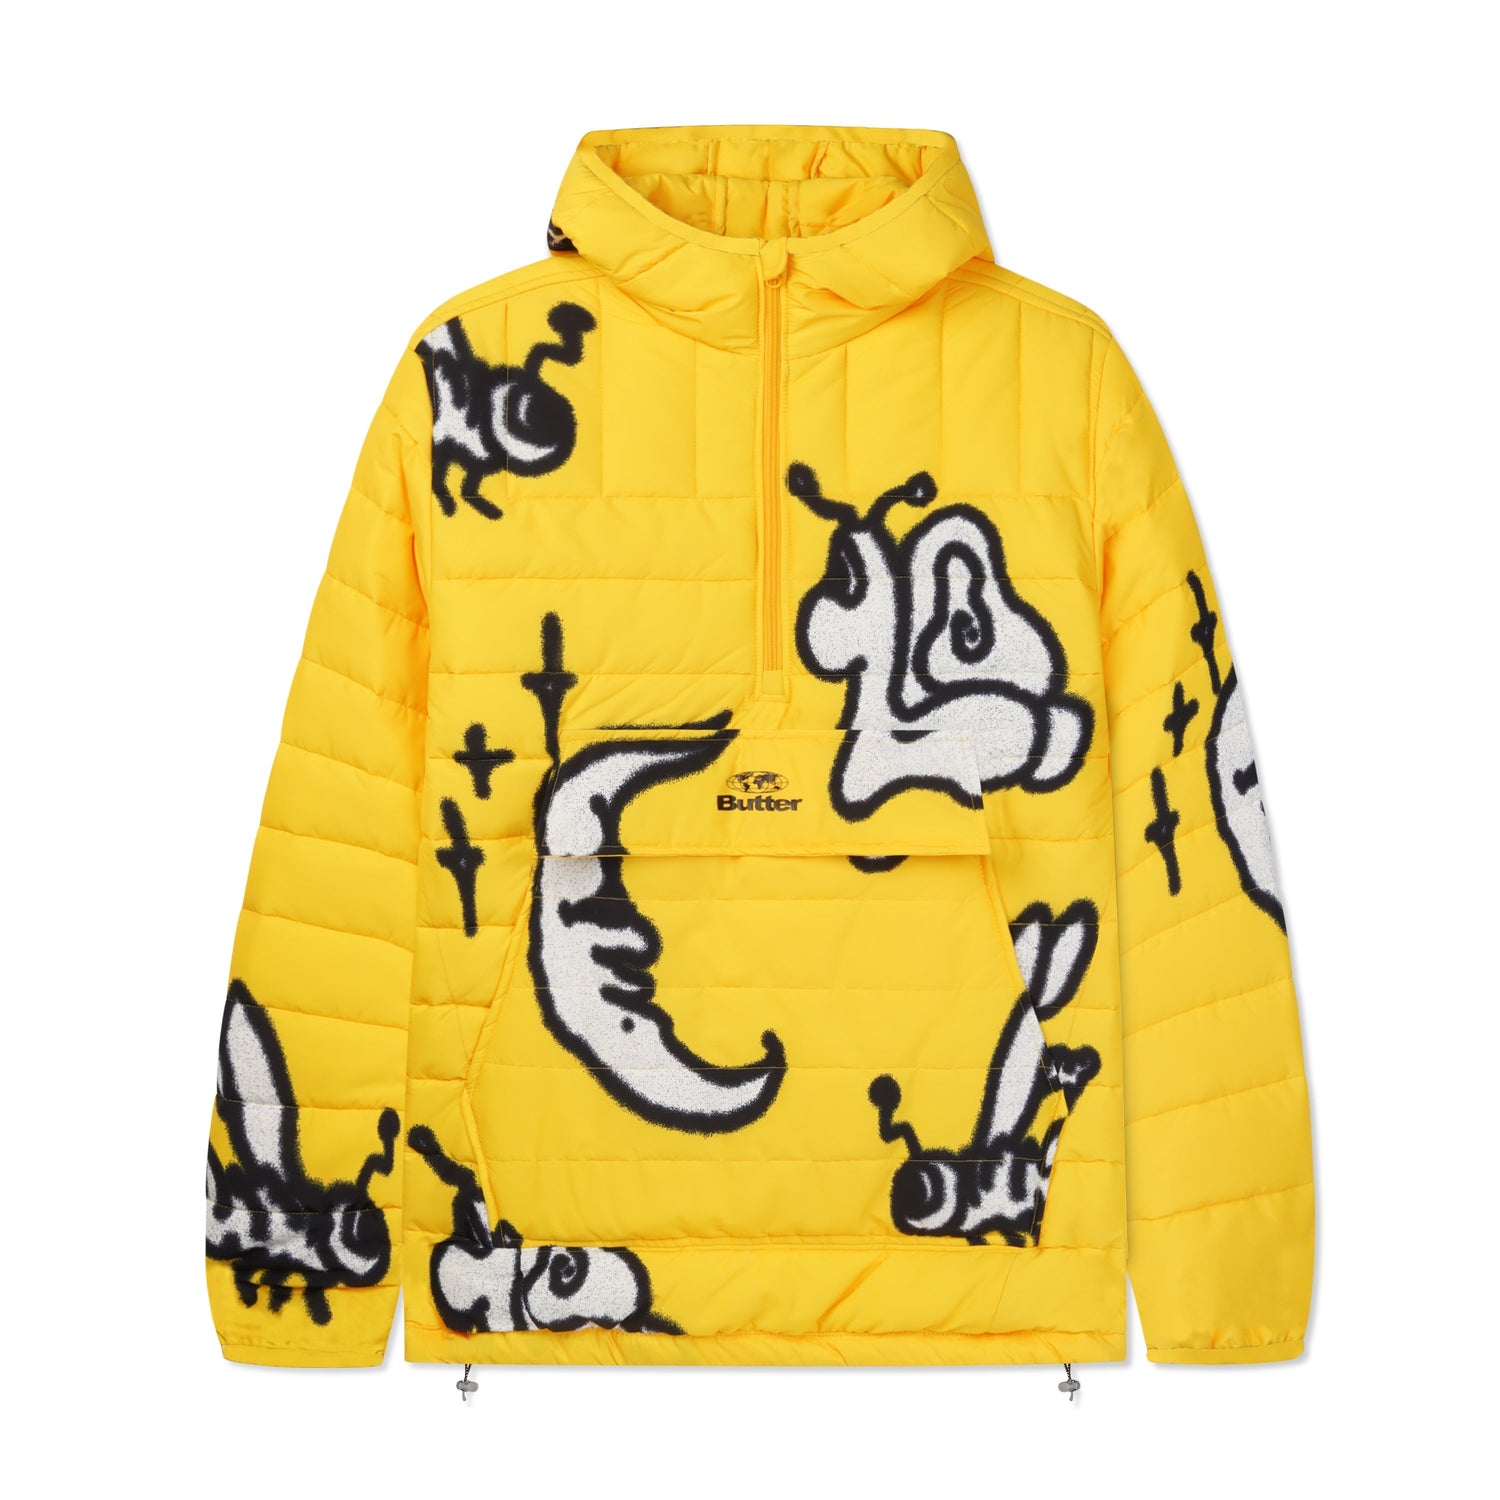 Critter Puffer Anorak Jacket, Yellow – Butter Goods